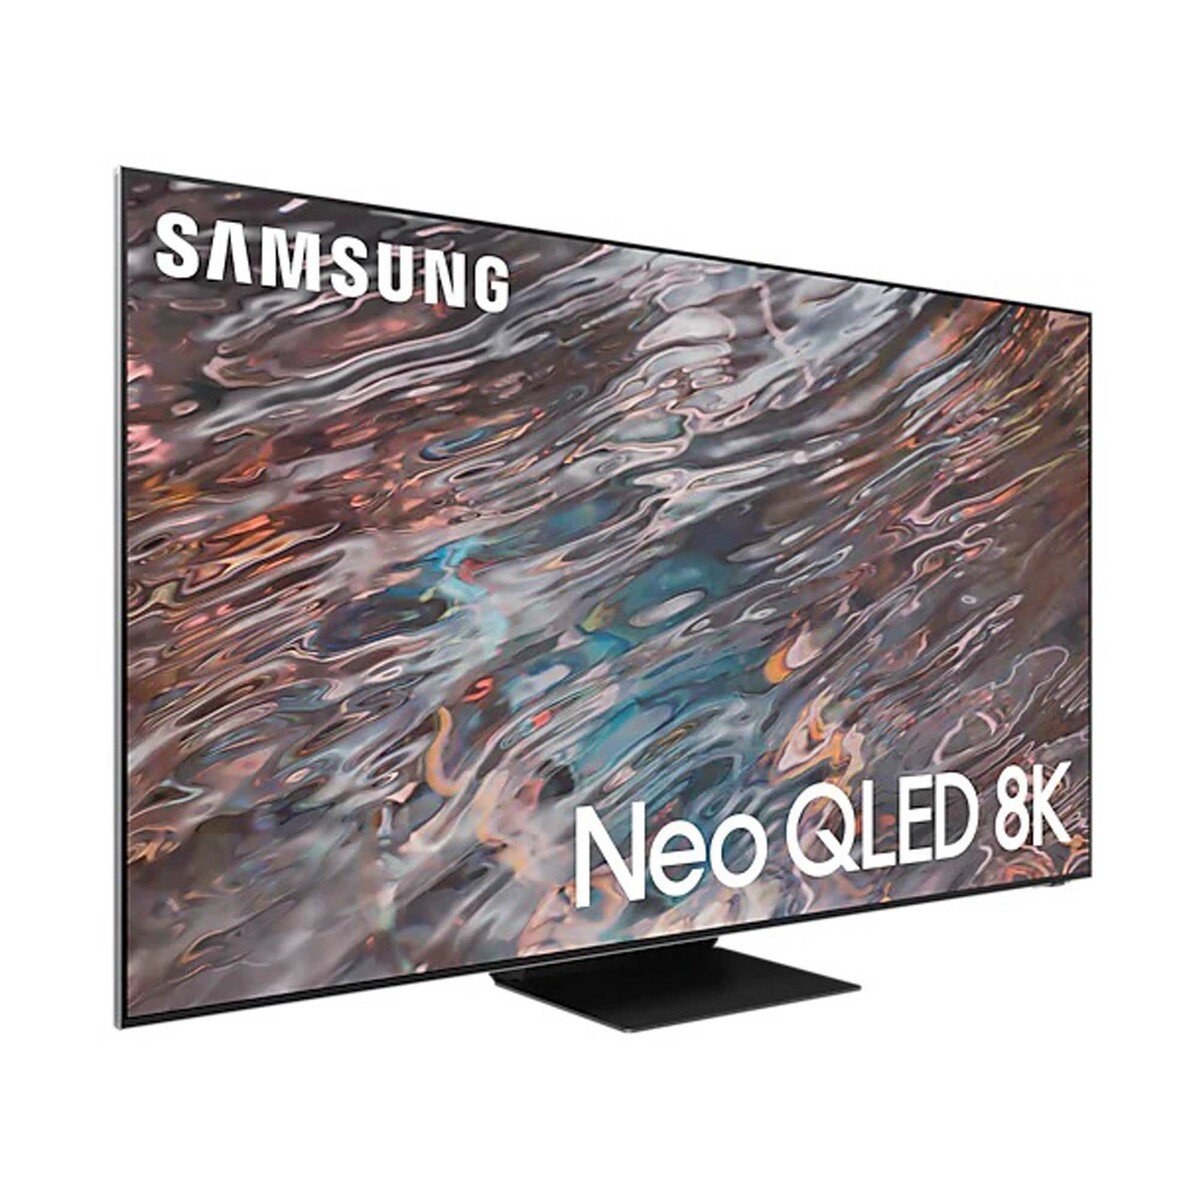 Samsung Neo QLED 8K Smart TV QA75QN800AUXZN 75inch